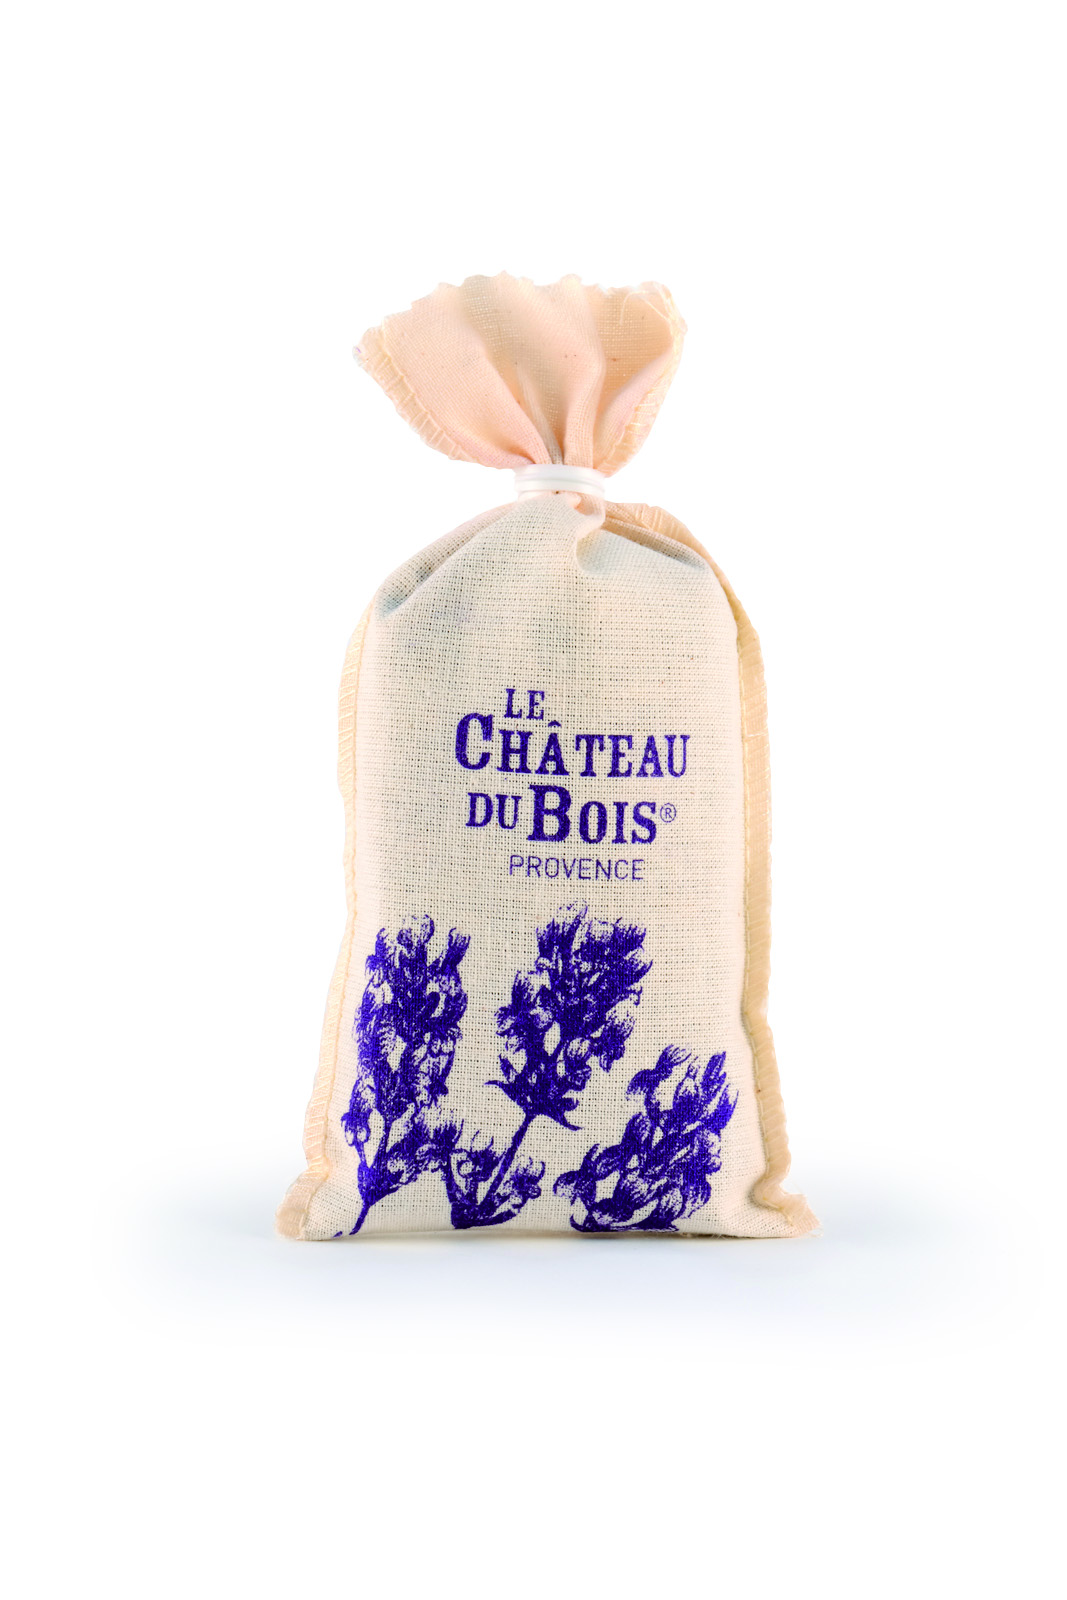 Lavender flowers cotton bag 20g